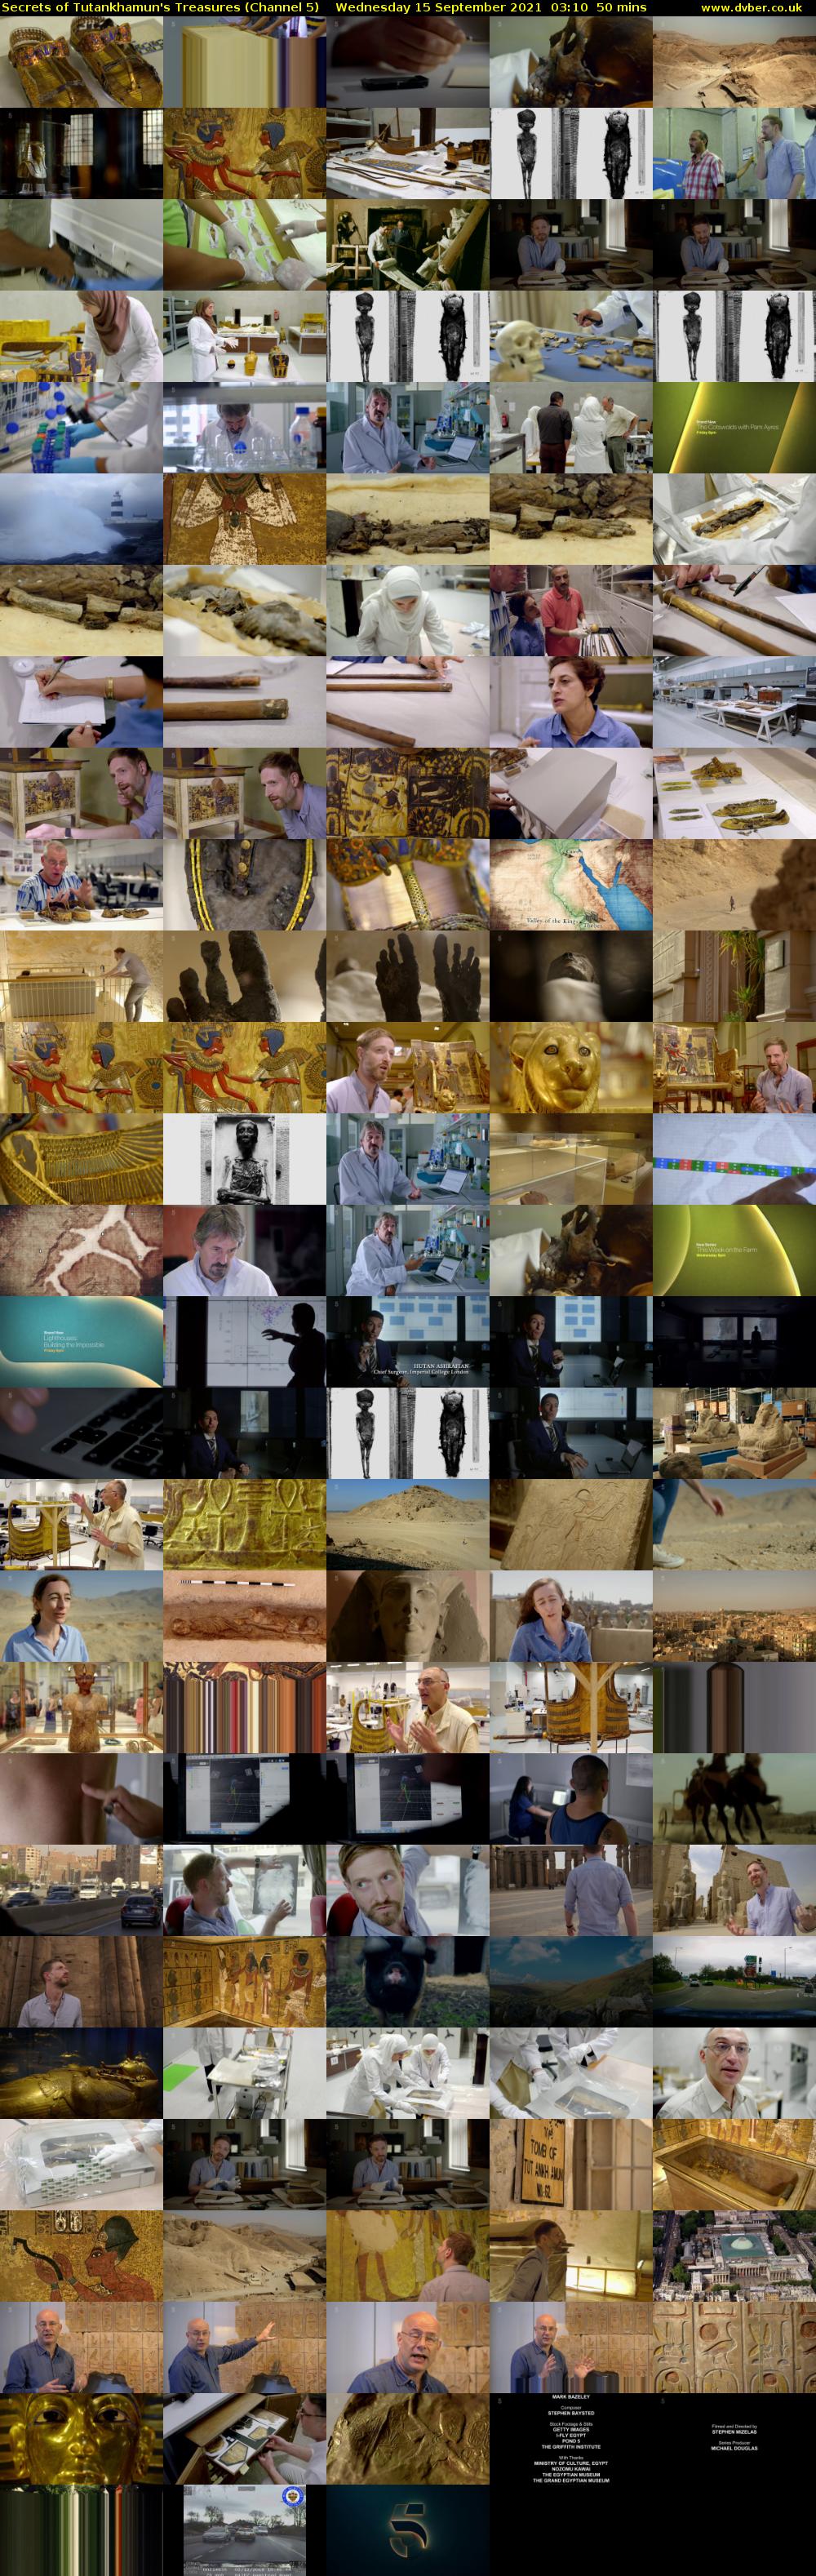 Secrets of Tutankhamun's Treasures (Channel 5) Wednesday 15 September 2021 03:10 - 04:00